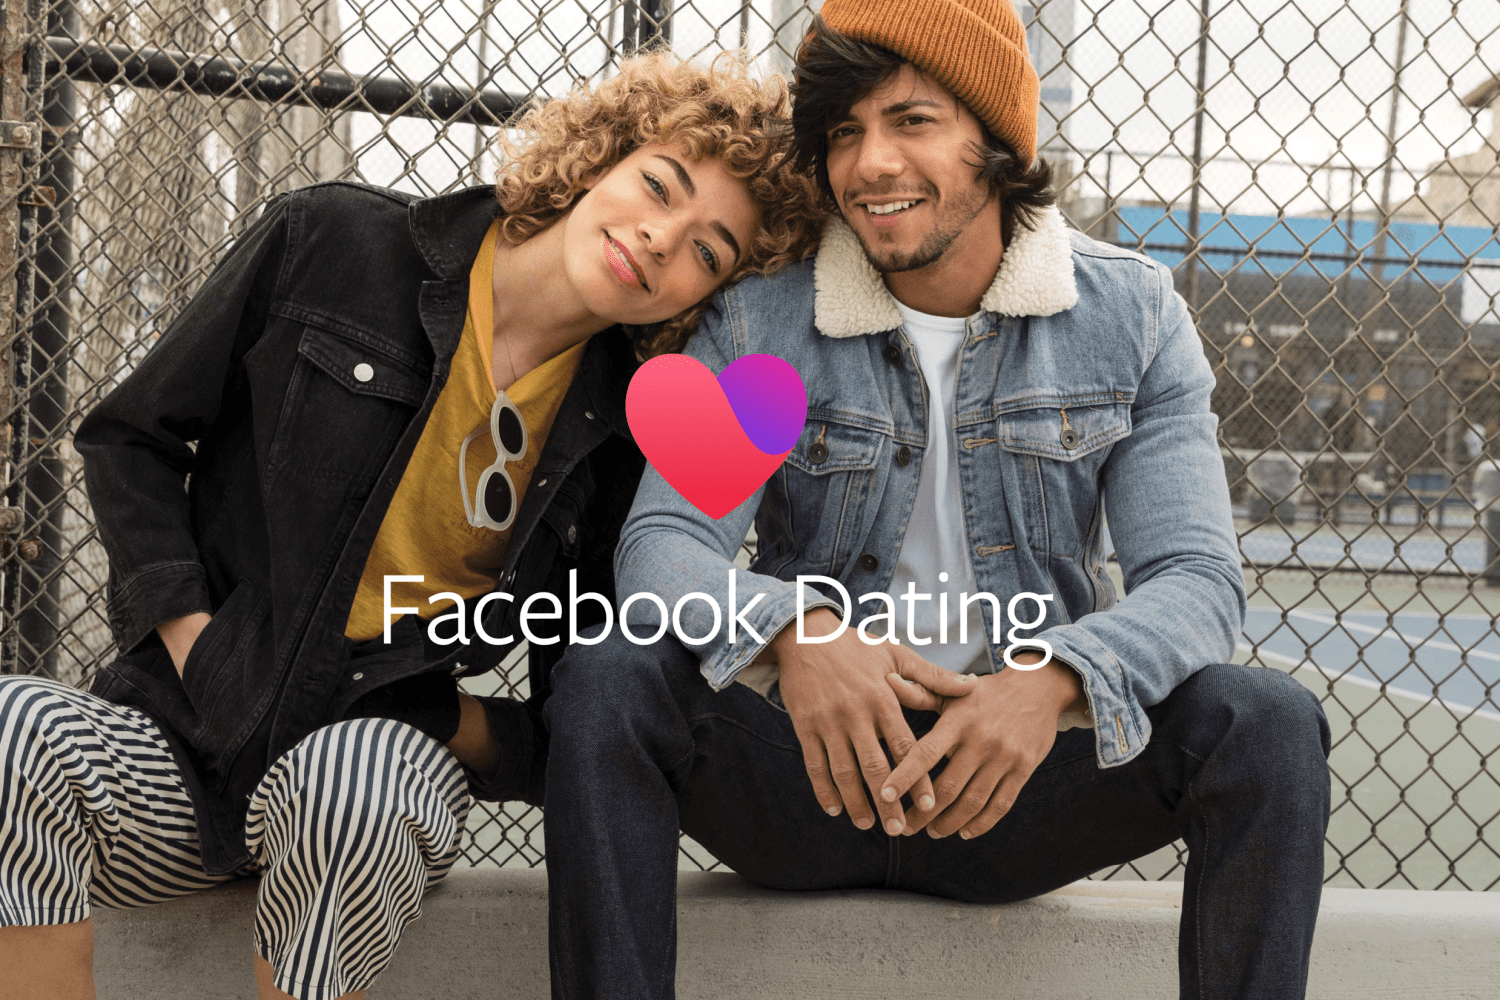 Facebook Dating erhält neue Funktionen, die das virtuelle Dating verbessern 293